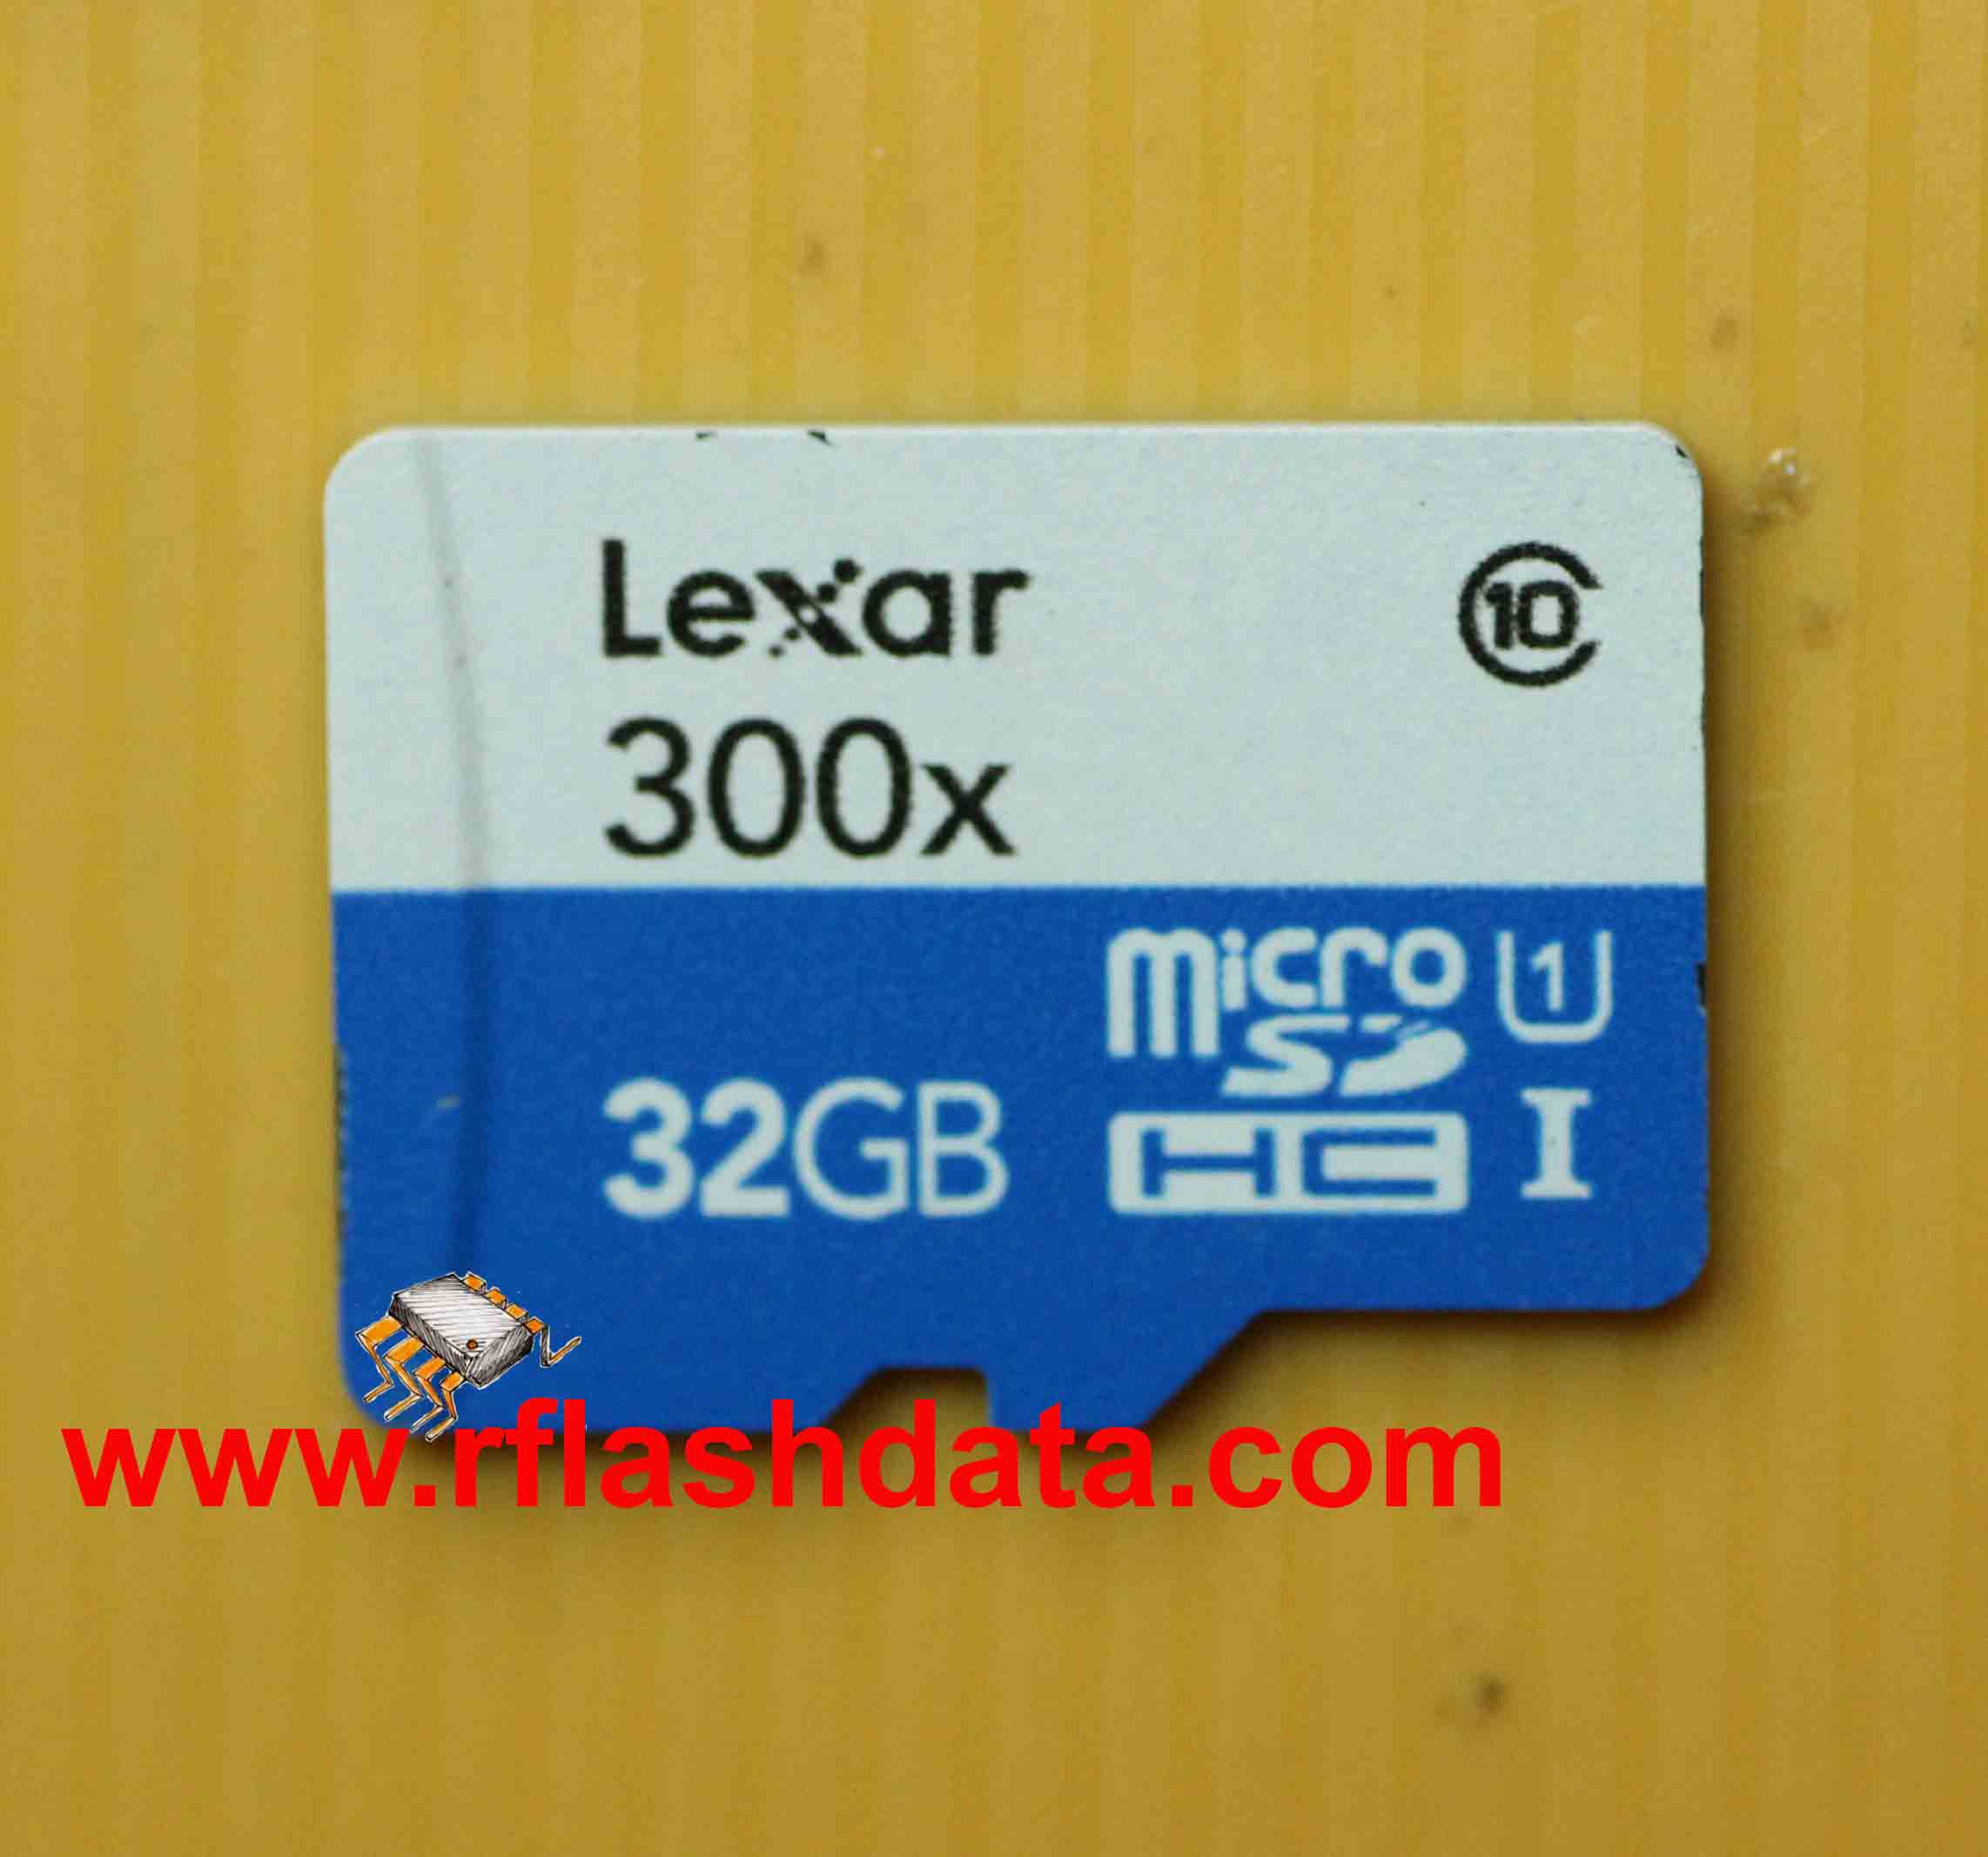 Lexar 32GB microSD